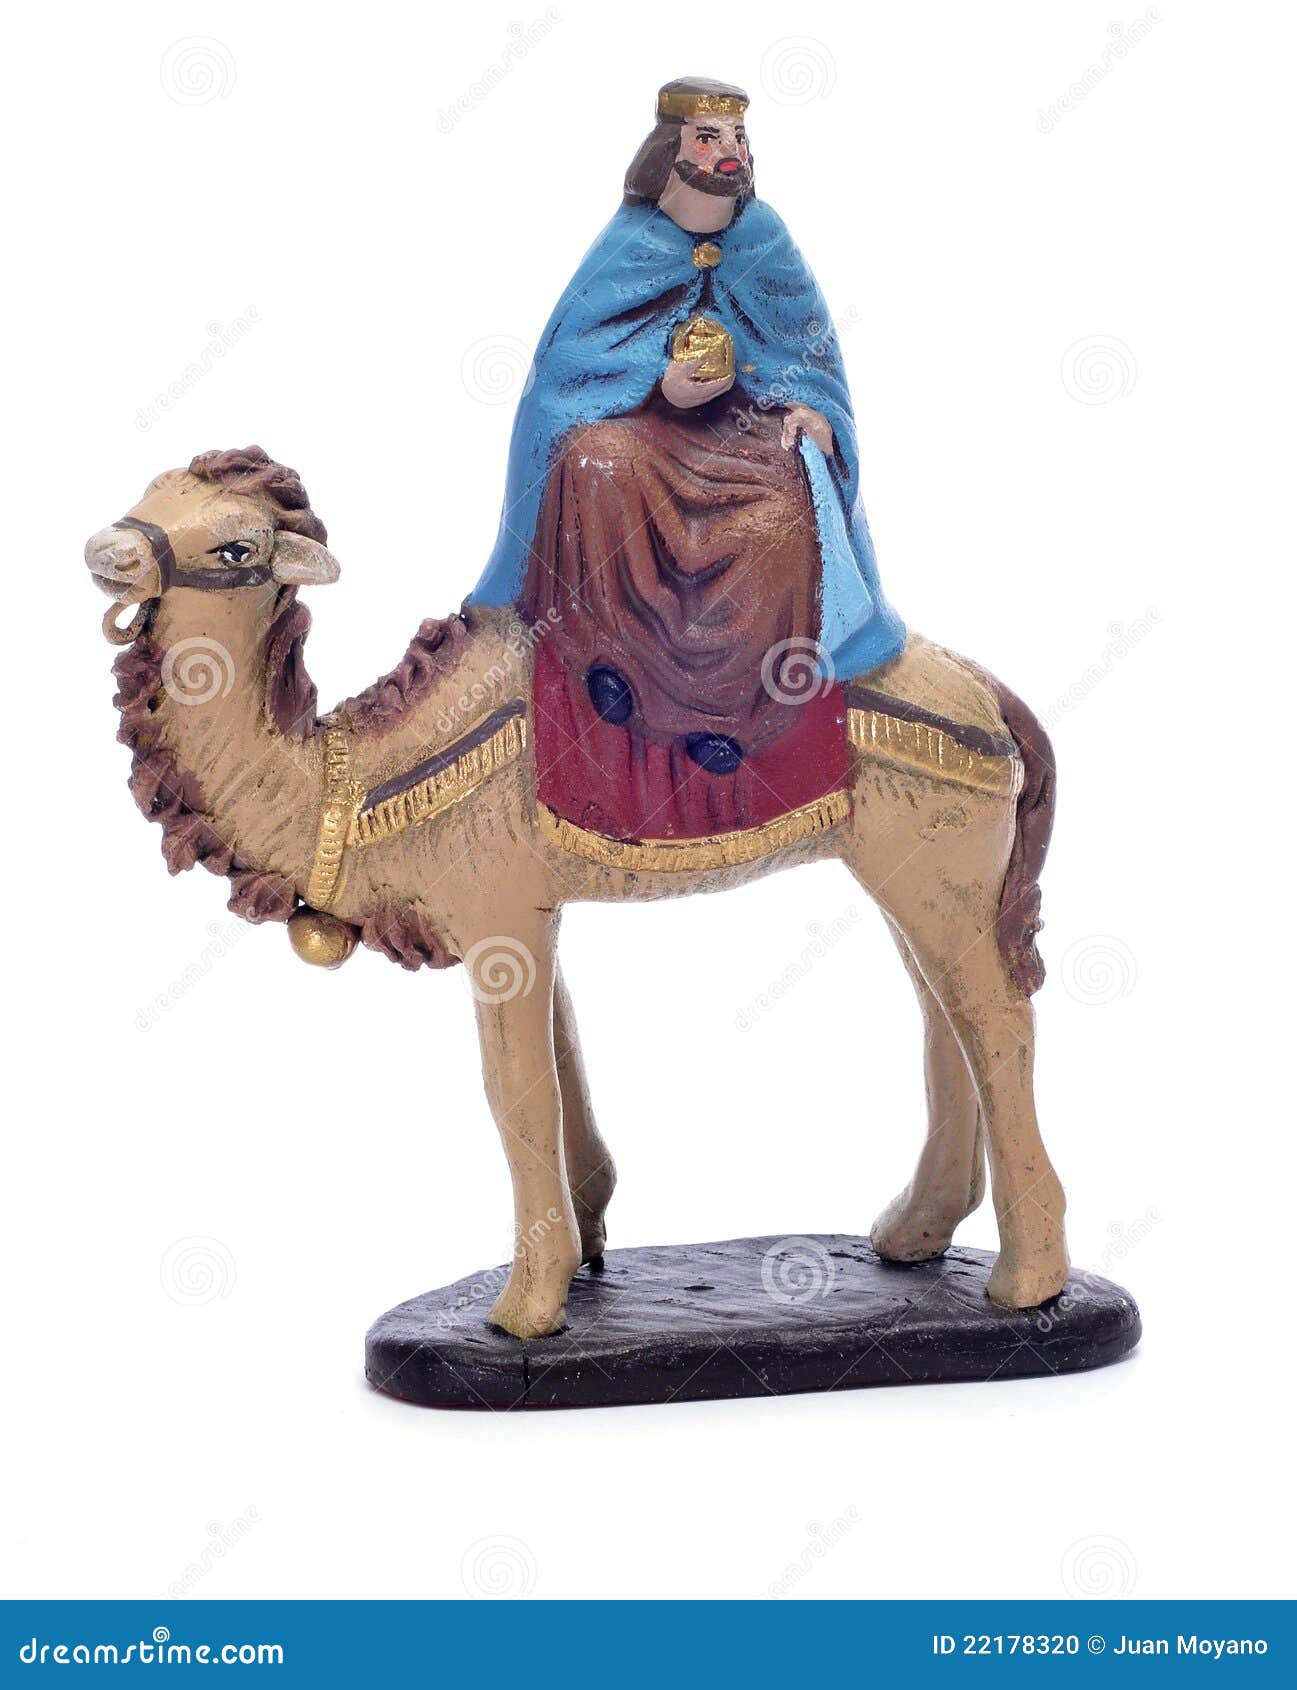 melchior magi riding a camel